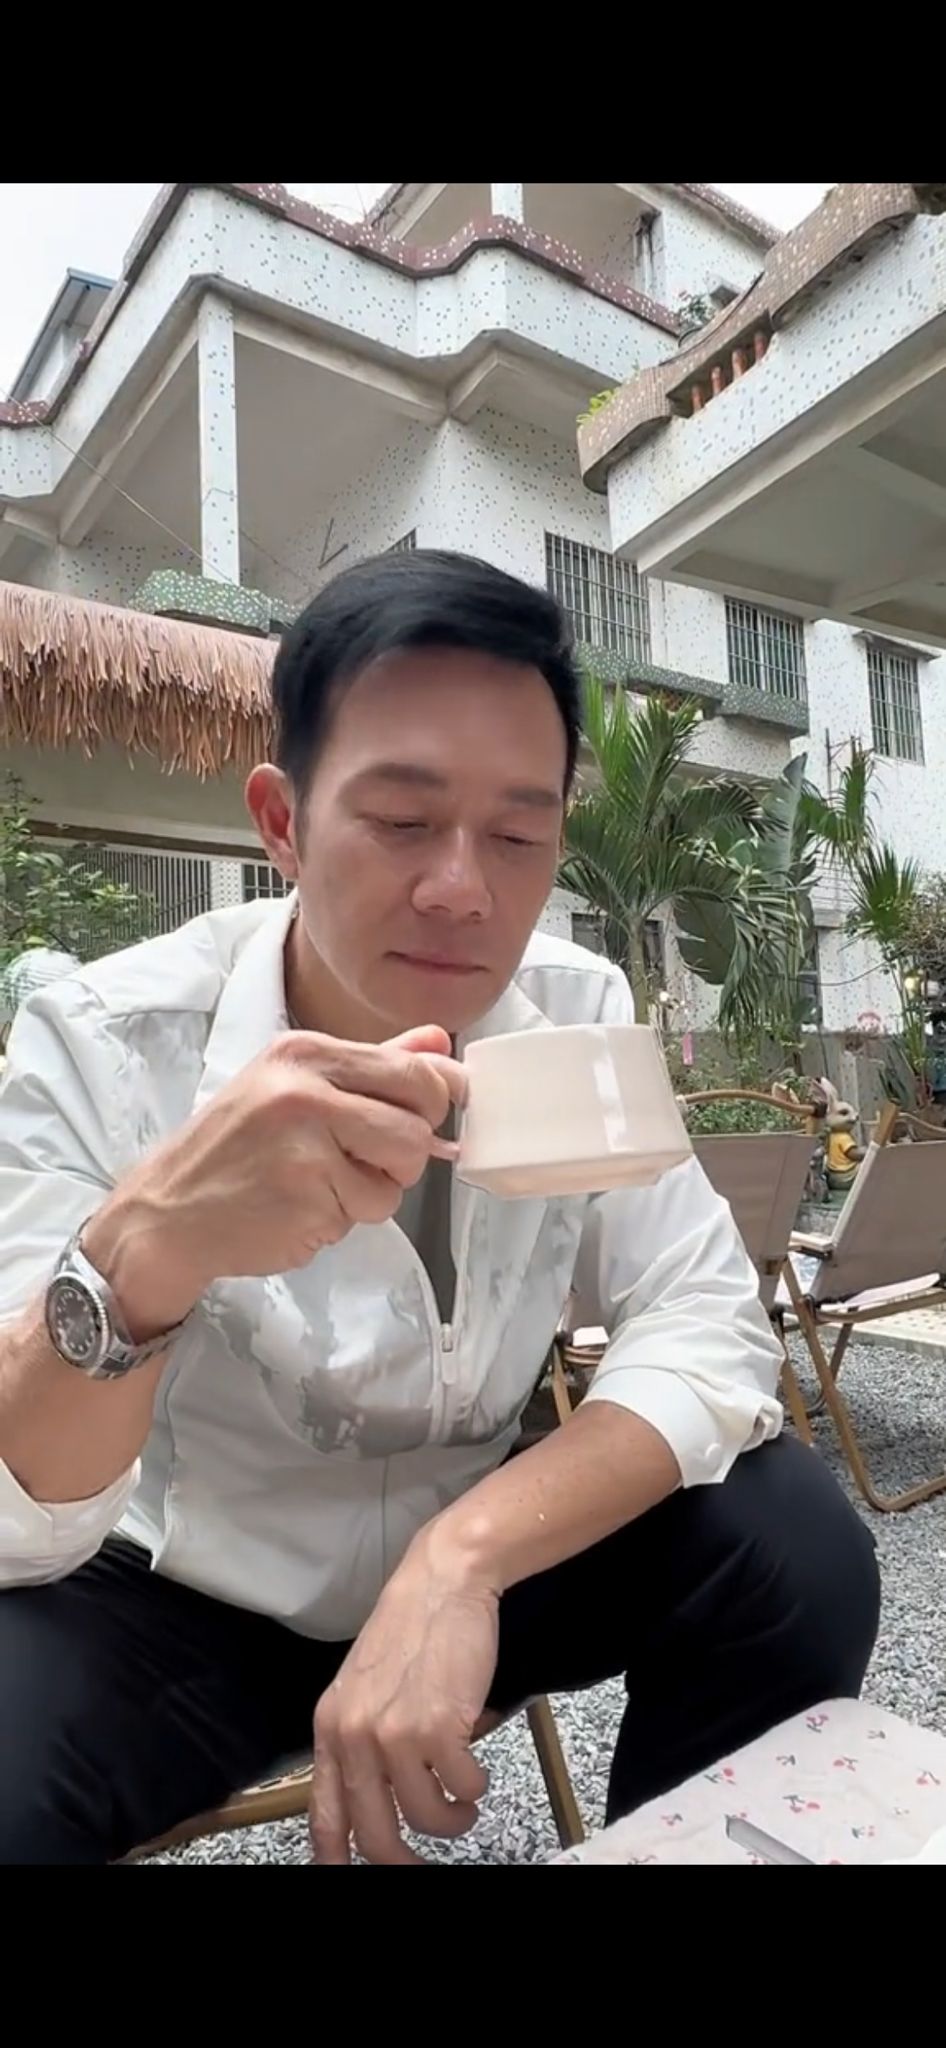 輝哥有空的時間喜歡飲咖啡，輕鬆一下。